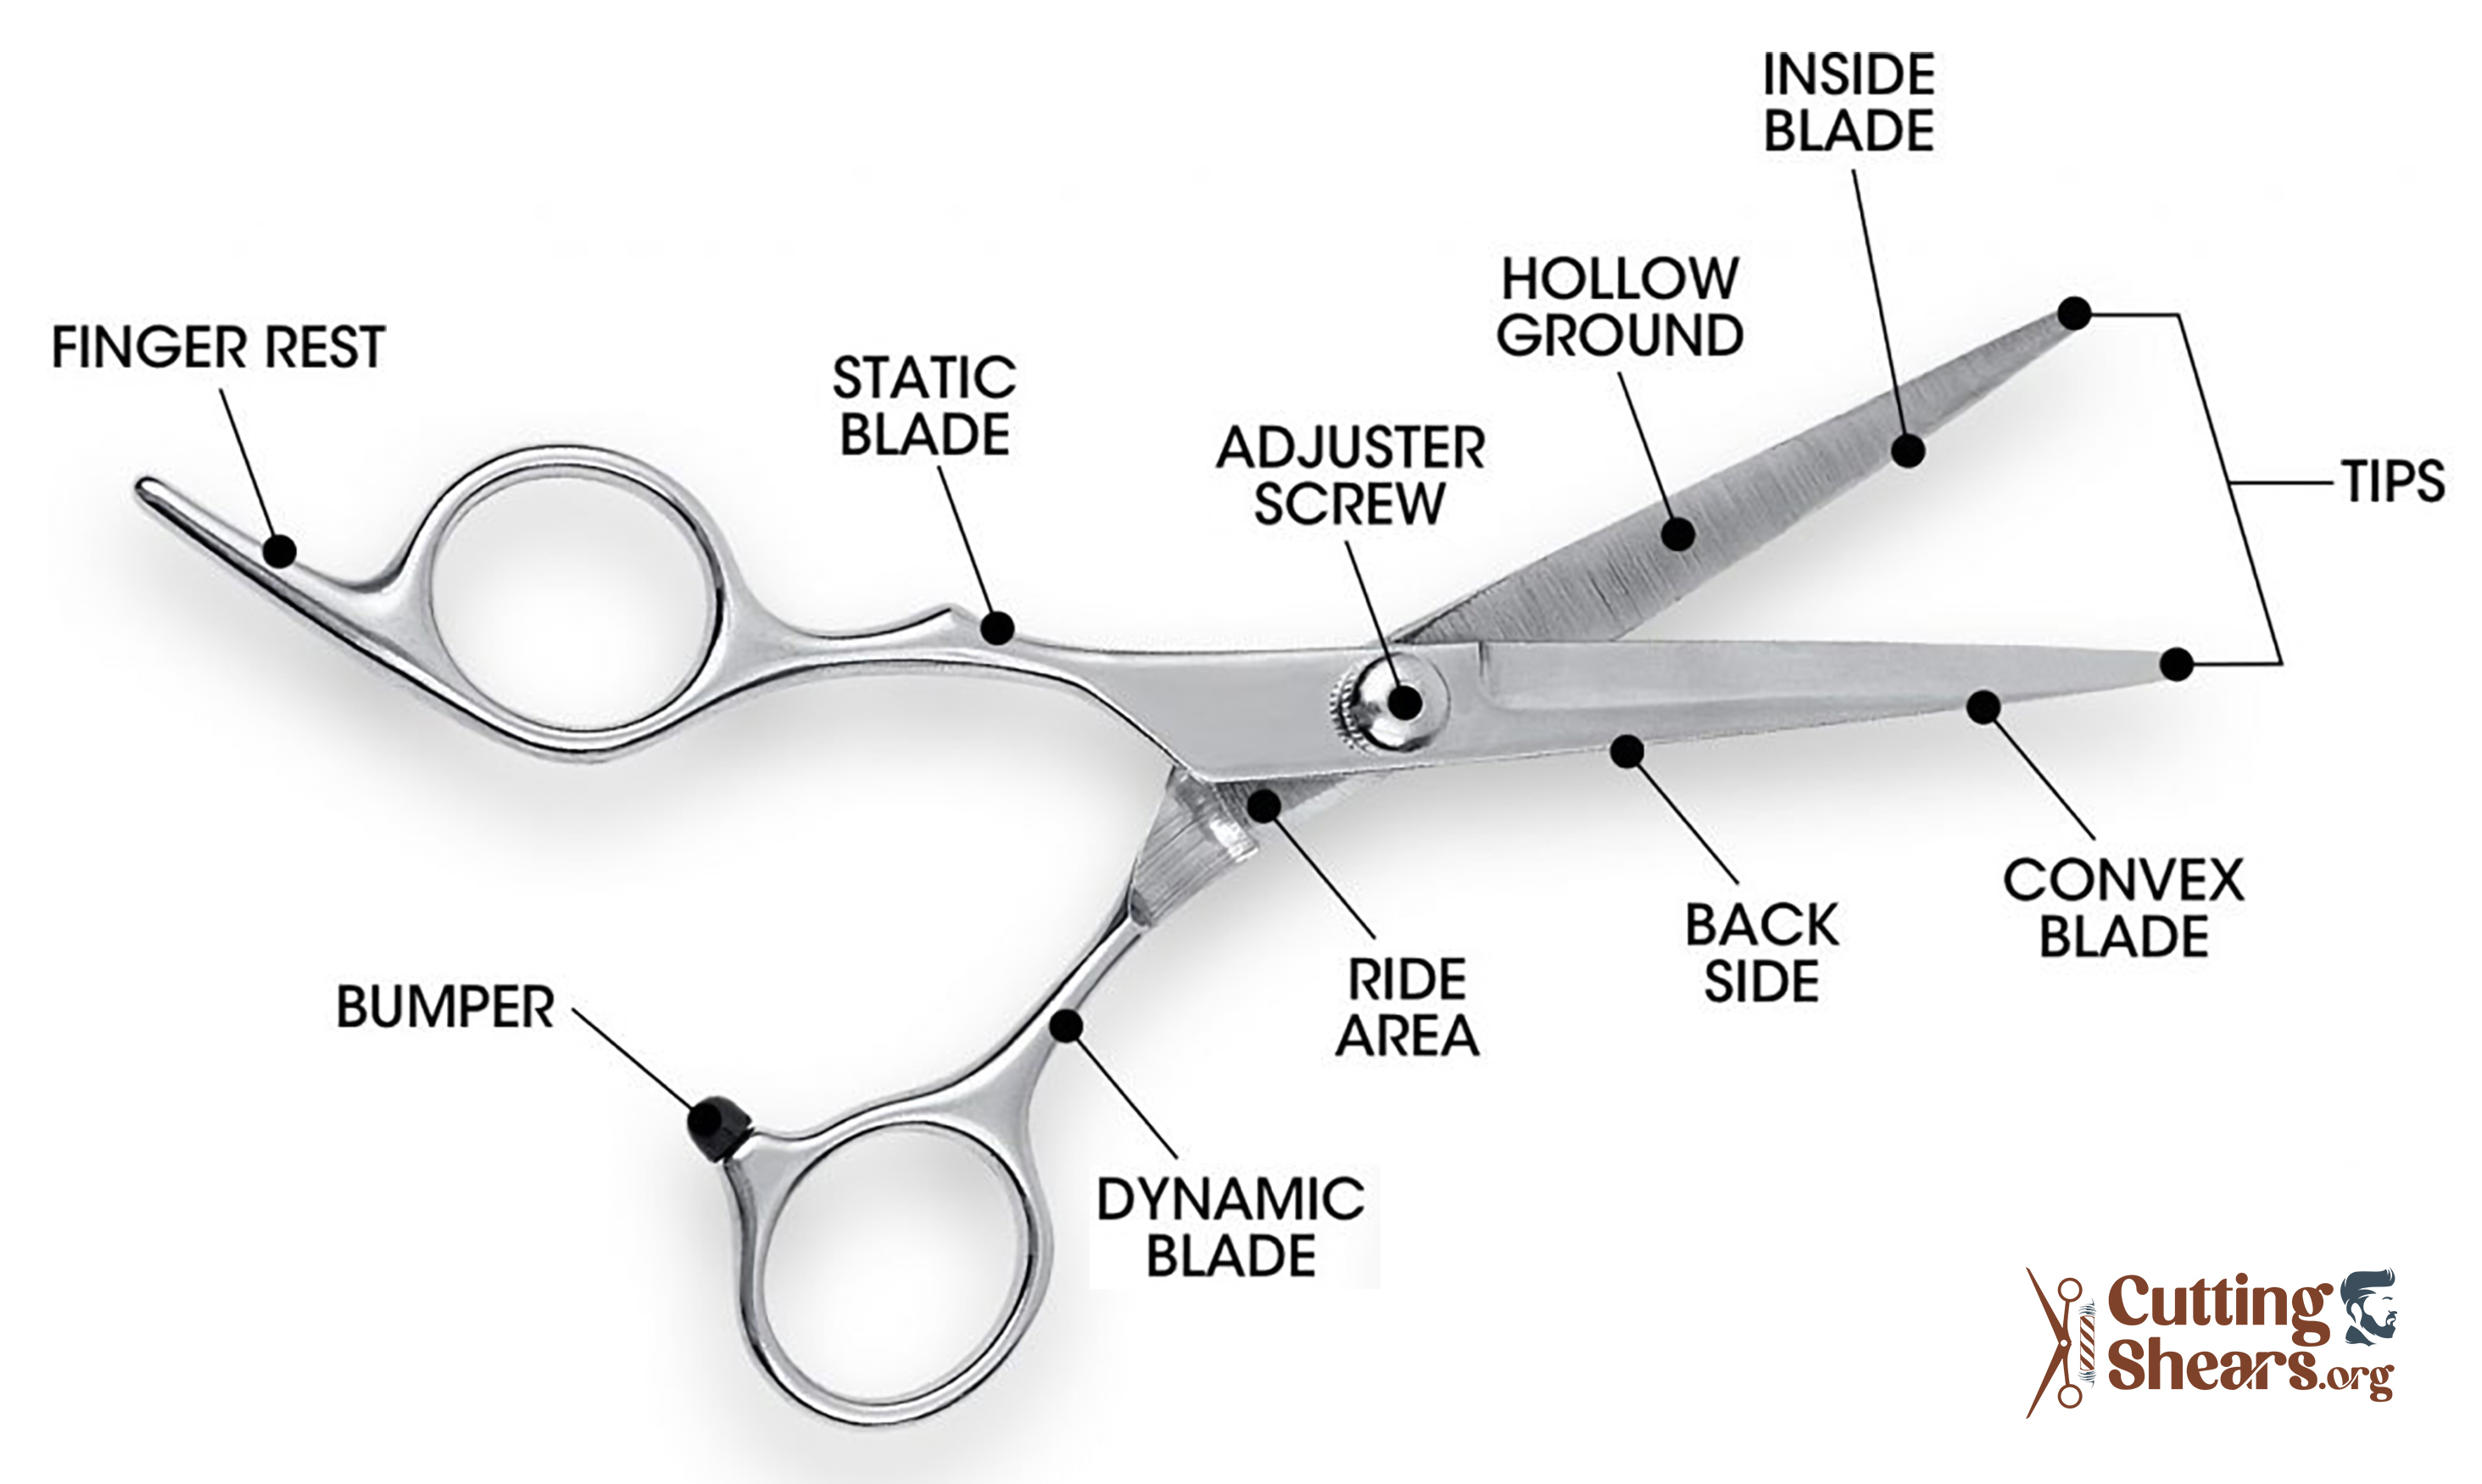 parts of scissors